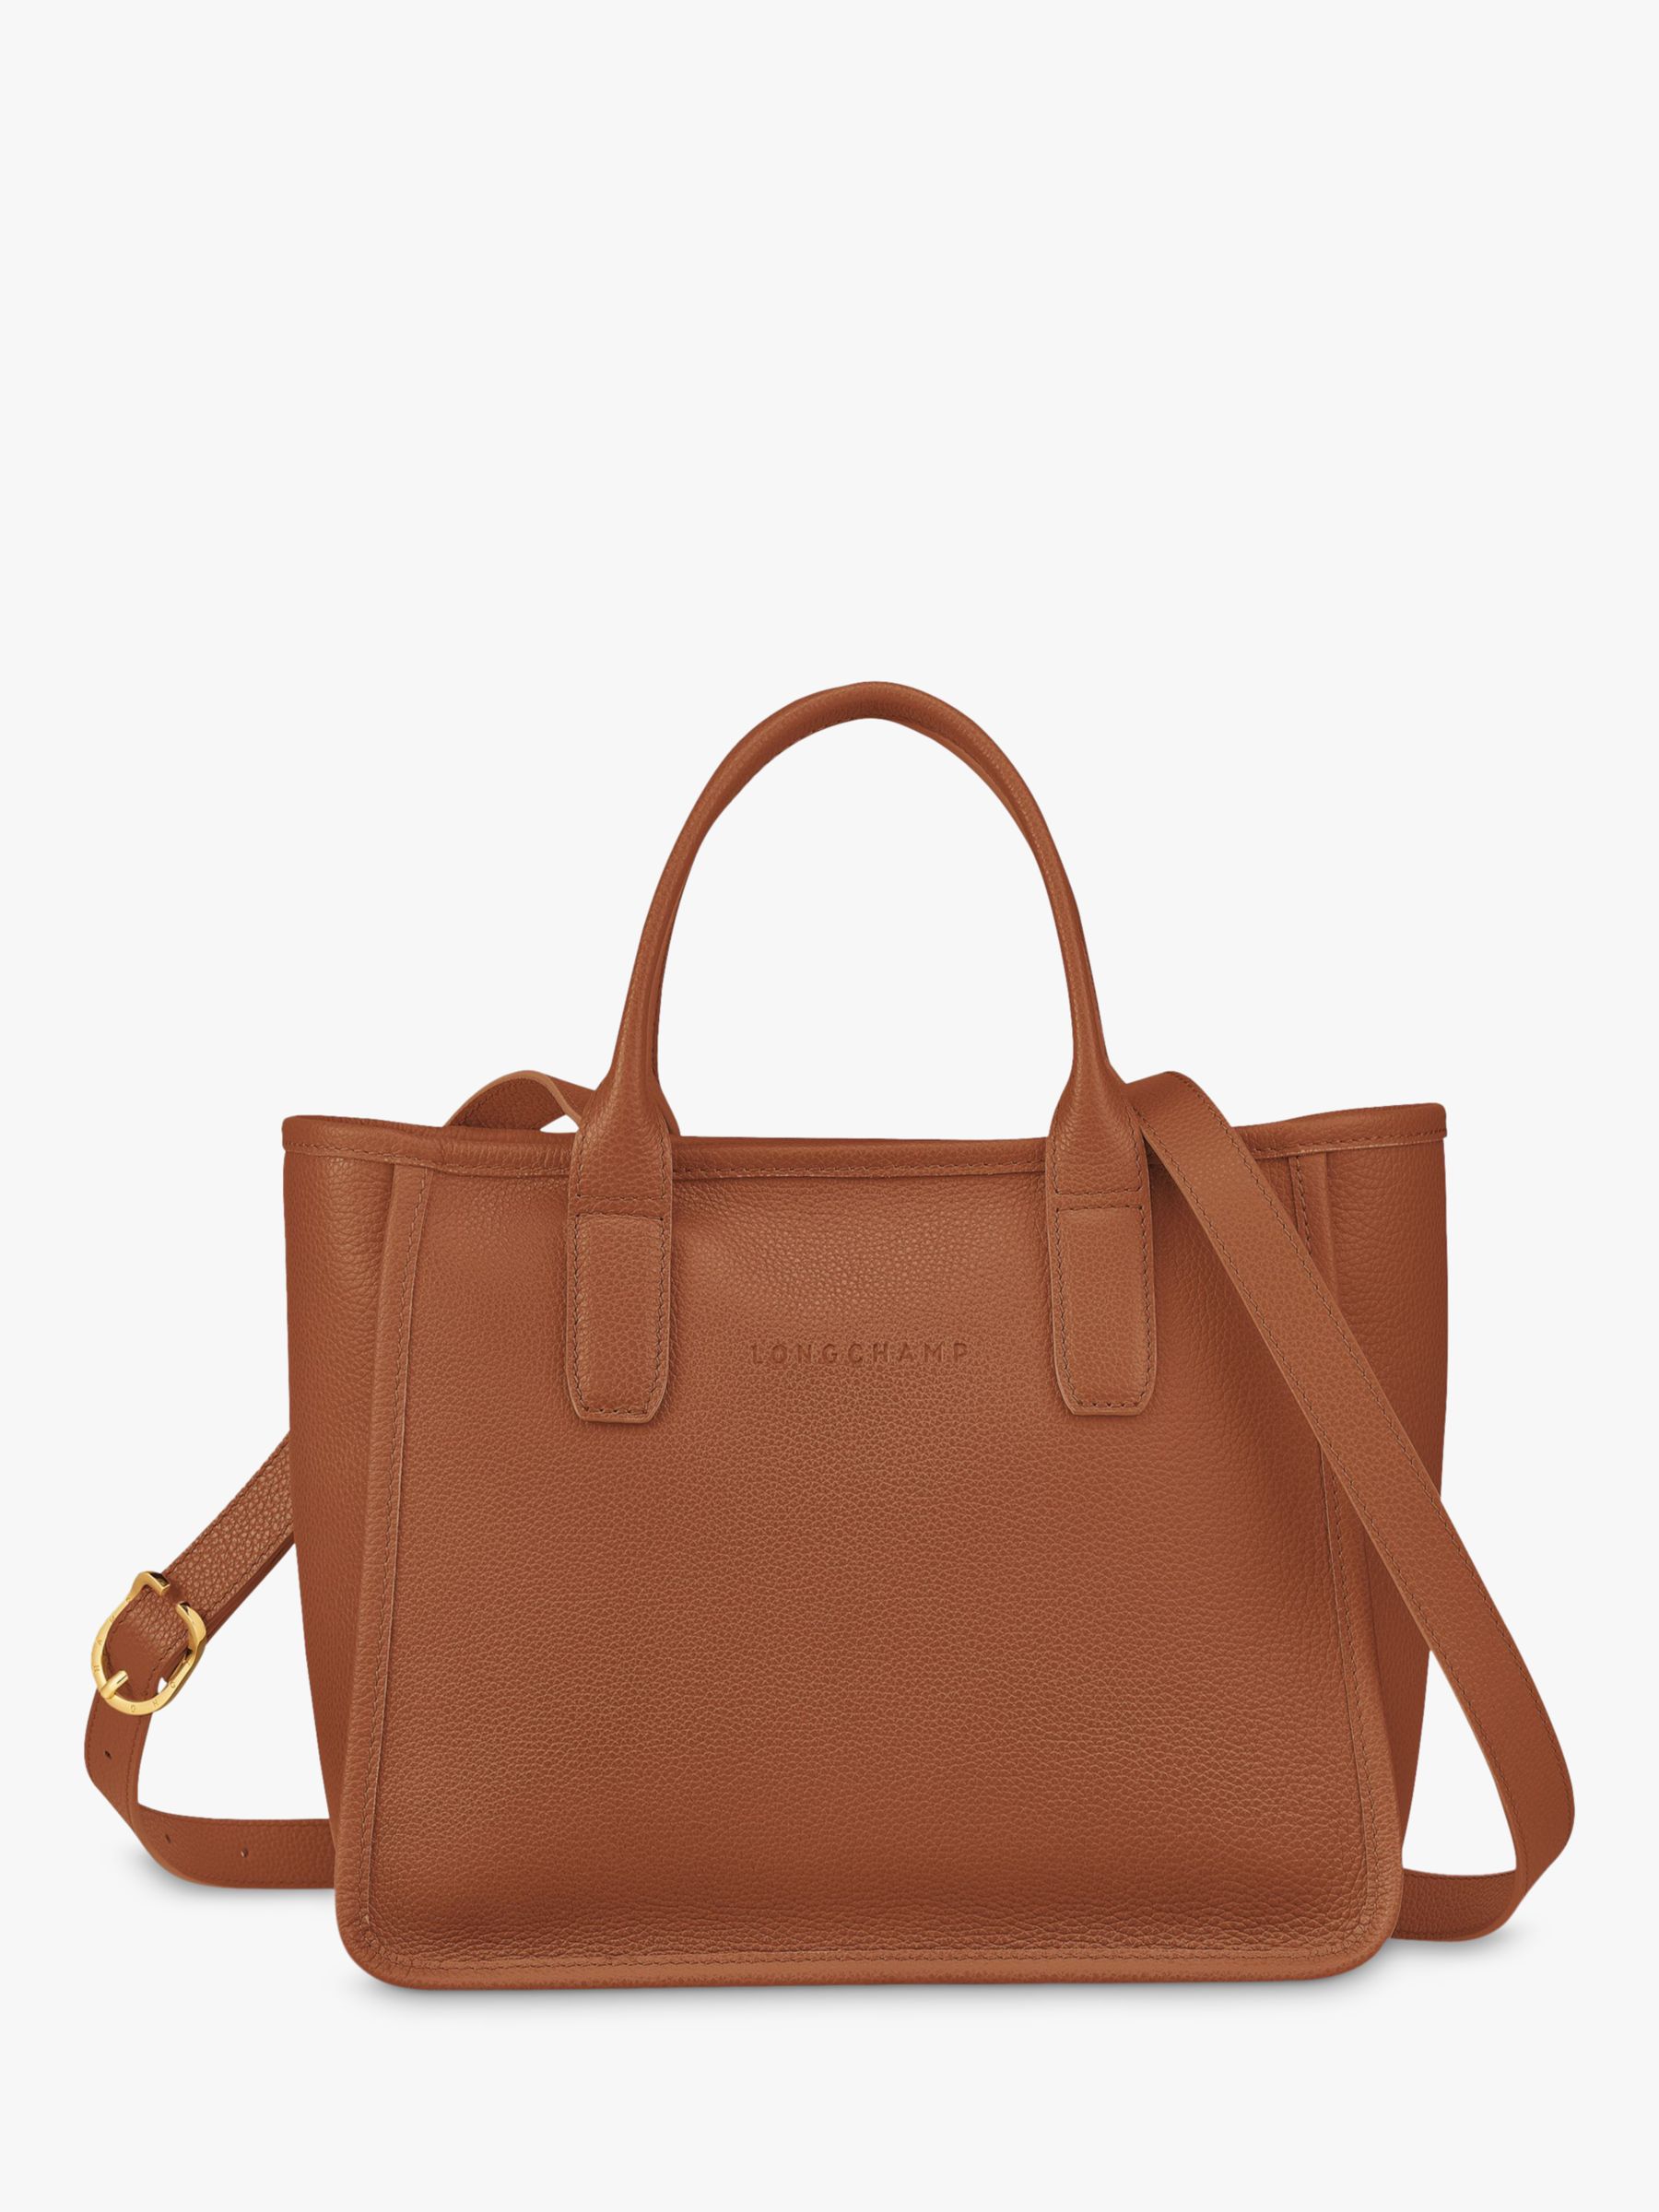 Longchamp Bag large size long handle caremel brown shoulder bag instock